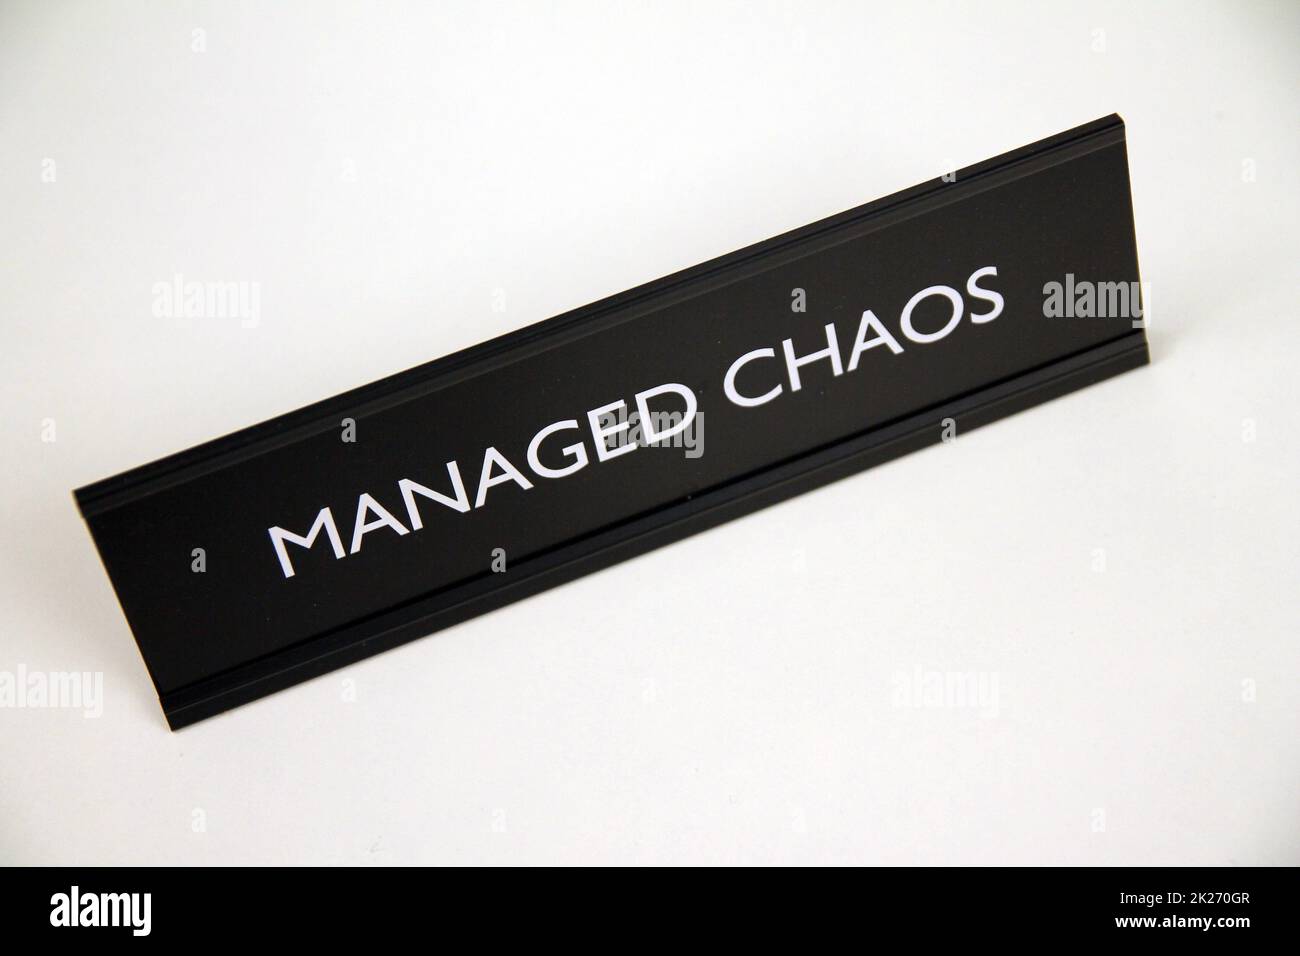 Verwaltetes Chaos, schwarzes und silbernes Metallschild auf einem weißen Regal Stockfoto